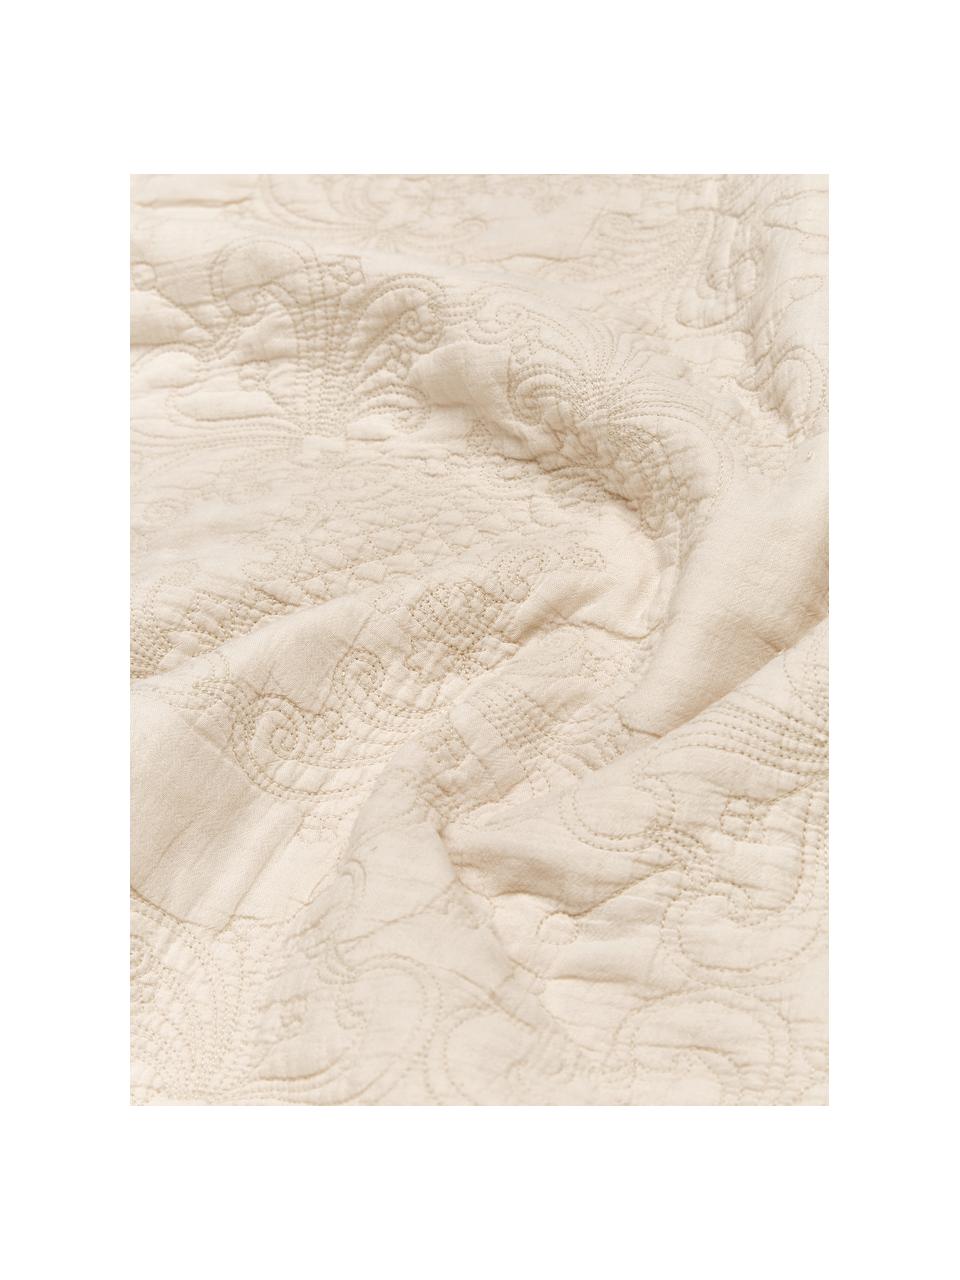 Bestickte Tagesdecke Madlon, Bezug: 100% Baumwolle, Beige, B 260 x L 260 cm (für Betten bis 200 x 200 cm)